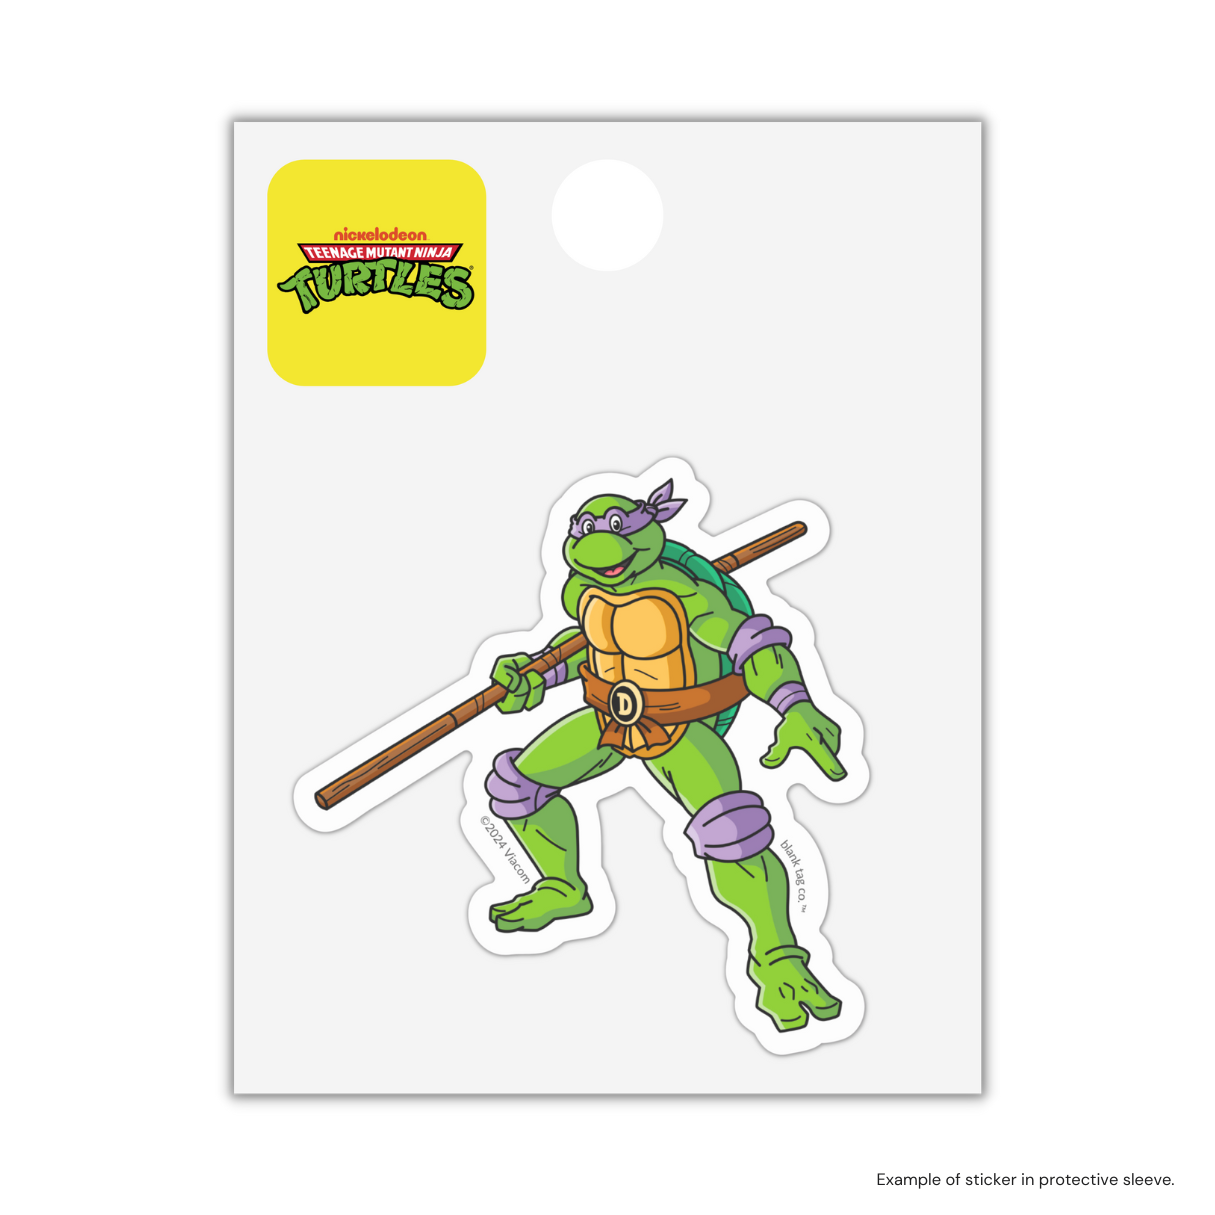 The Donatello Sticker